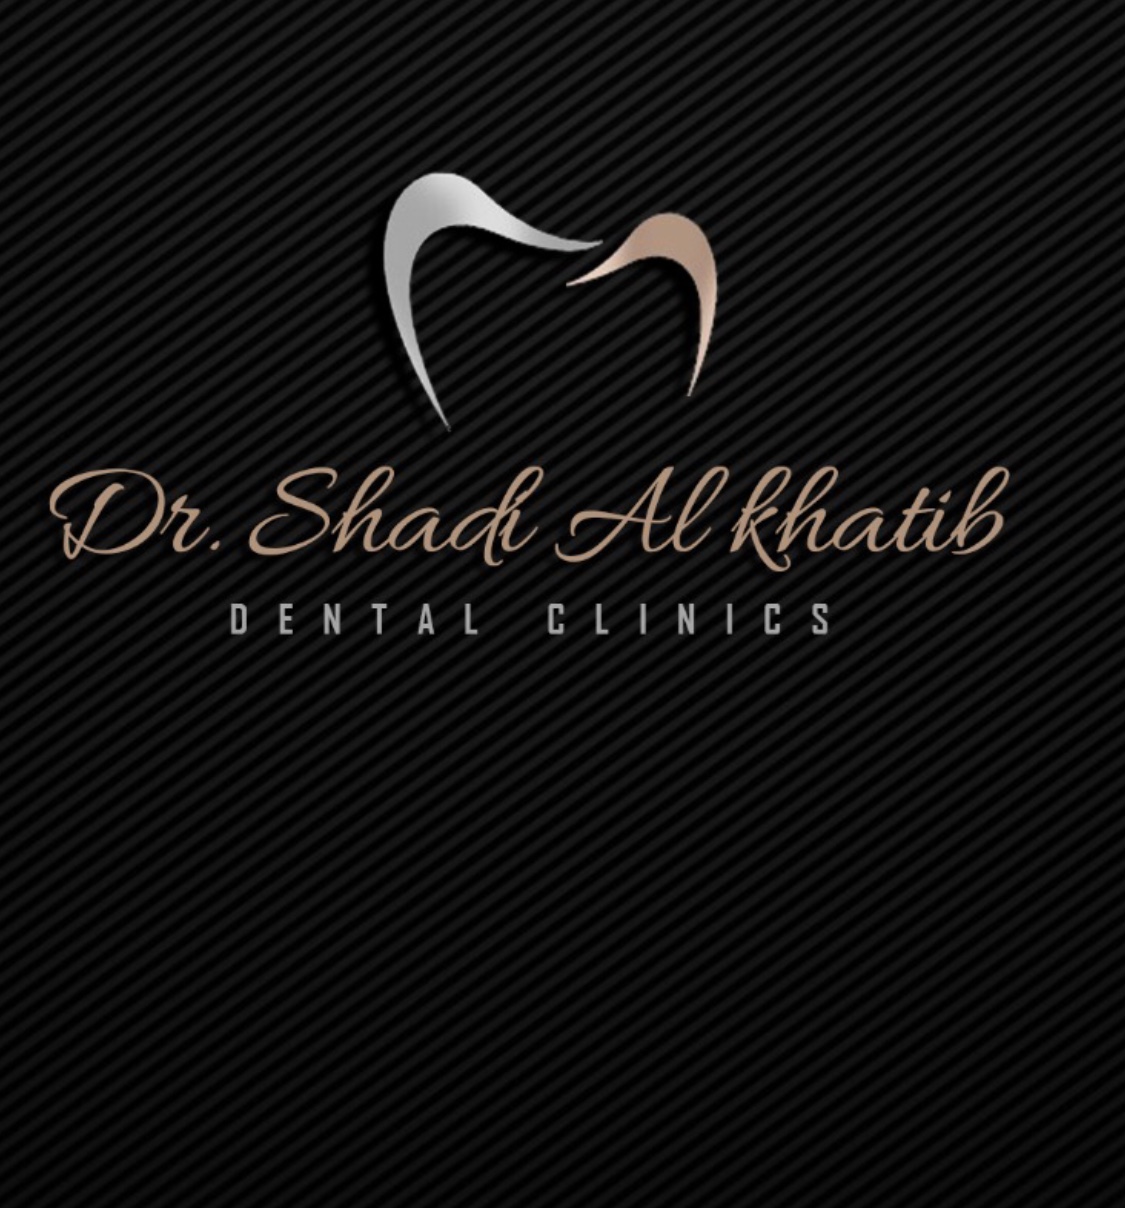 dr shadi logo